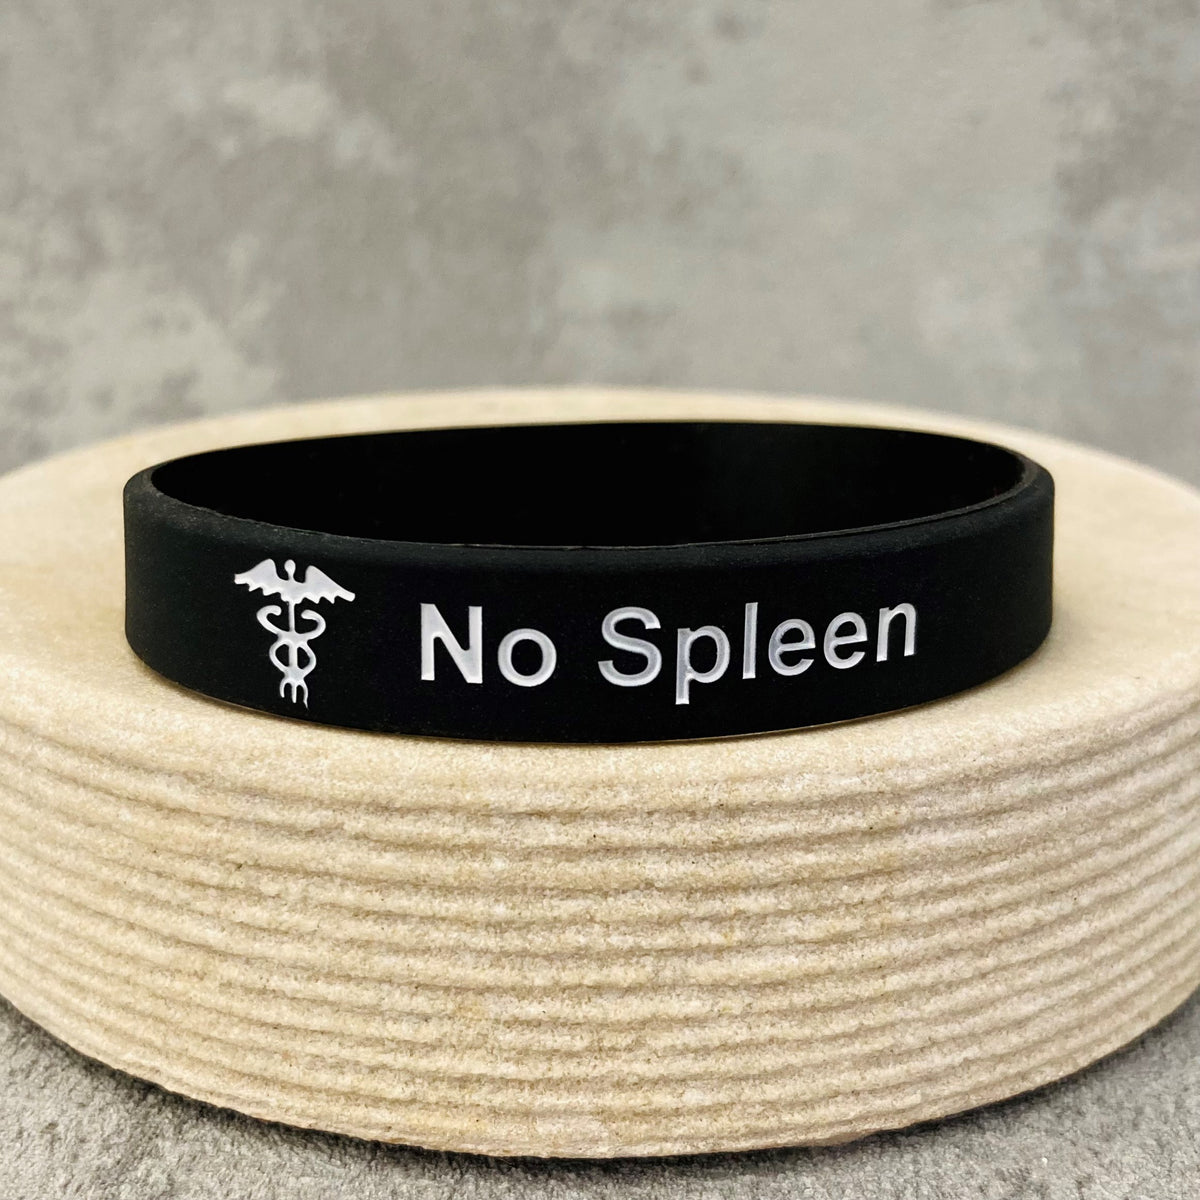 medical wristbands for splenectomy no spleen bands